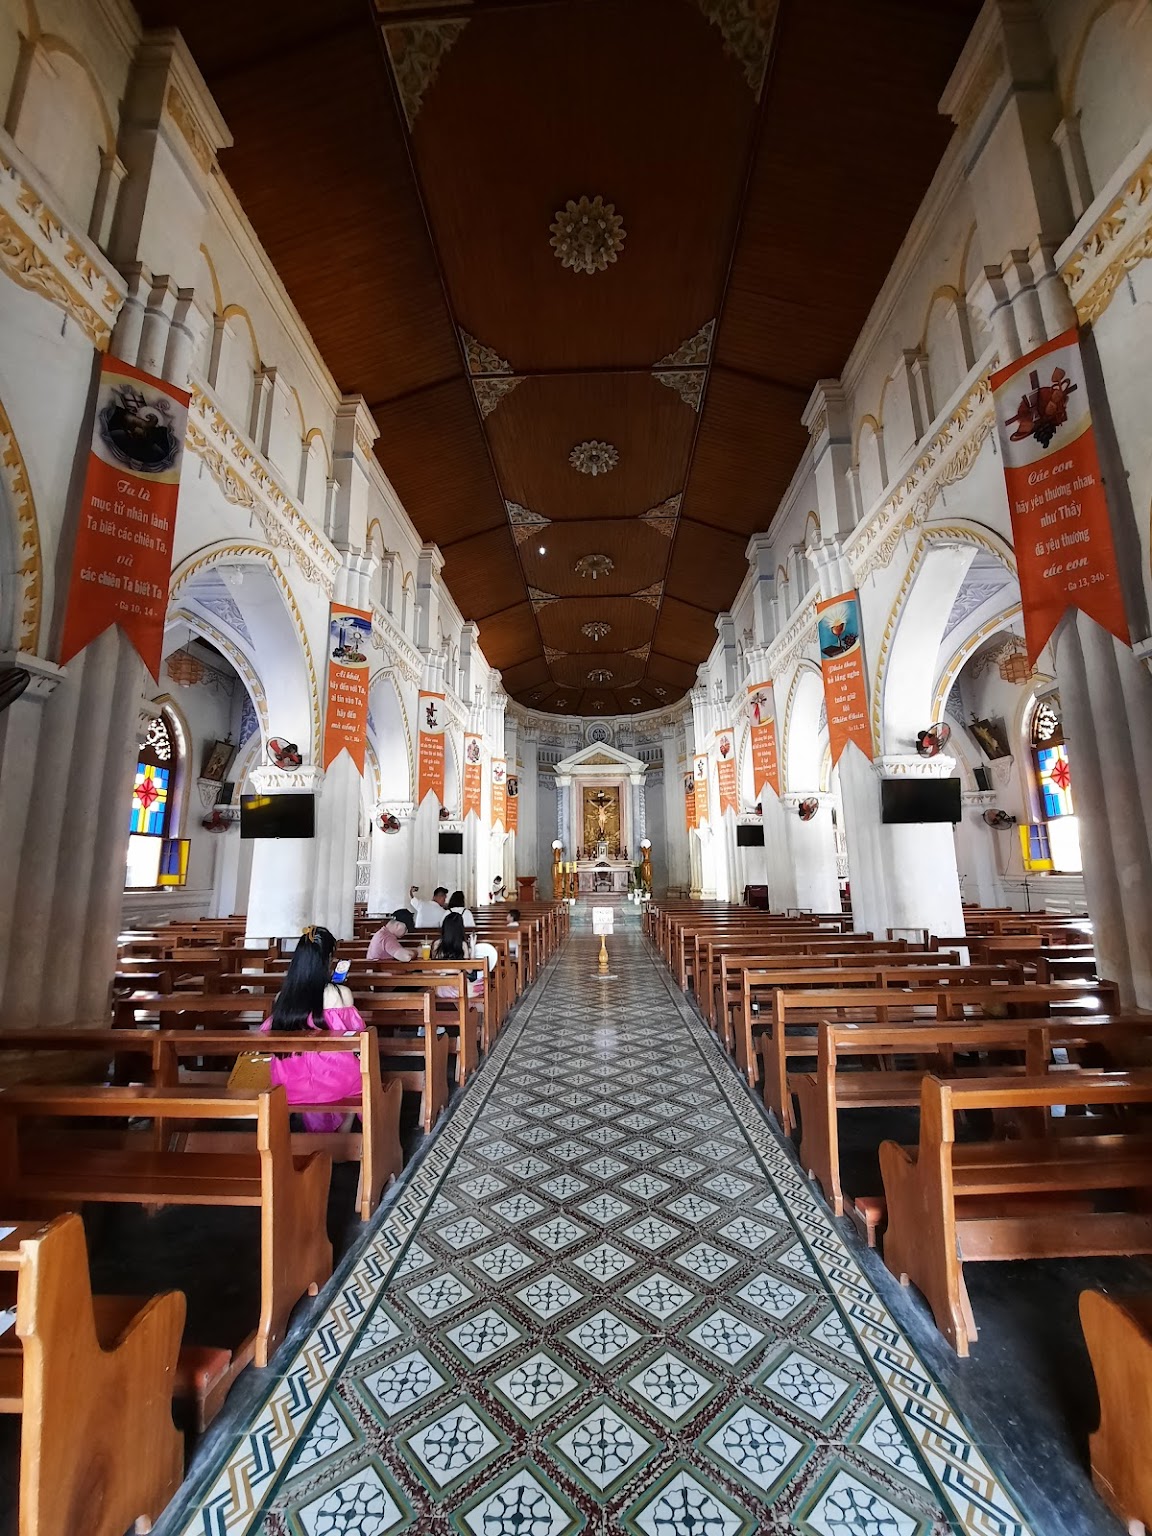 Mang Lang Church - Interior